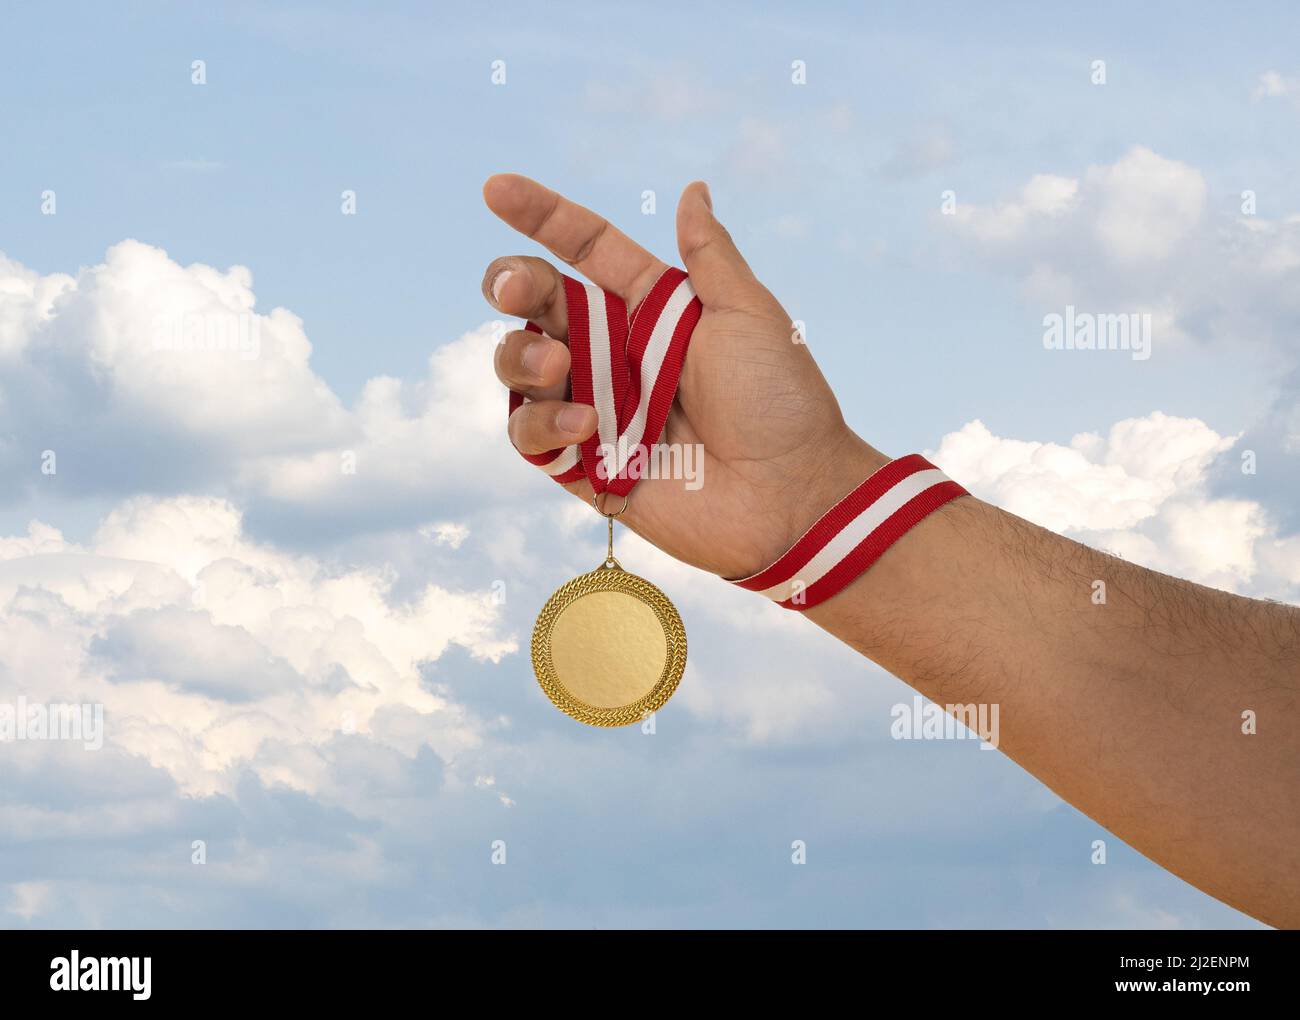 Uomo che alza la mano e tiene medaglia d'oro. Concetto di ambizione perseveranza e vittoria. Foto Stock